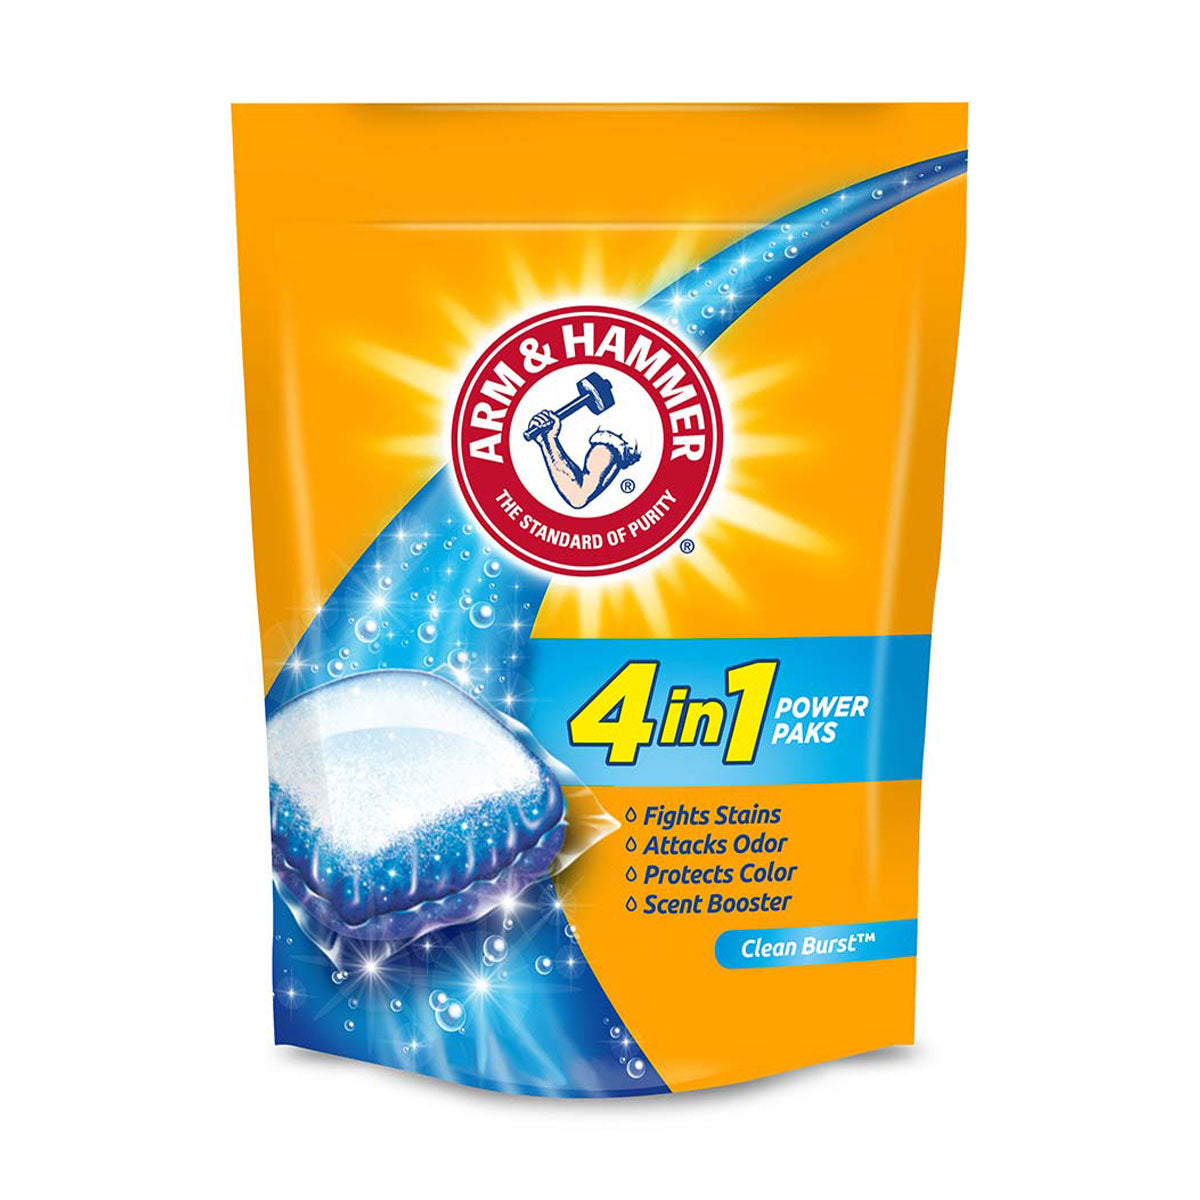 Detergente para ropa en cápsulas Power Paks 4-en-1 Arm & Hammer, Alta Eficiencia (21 unidades)